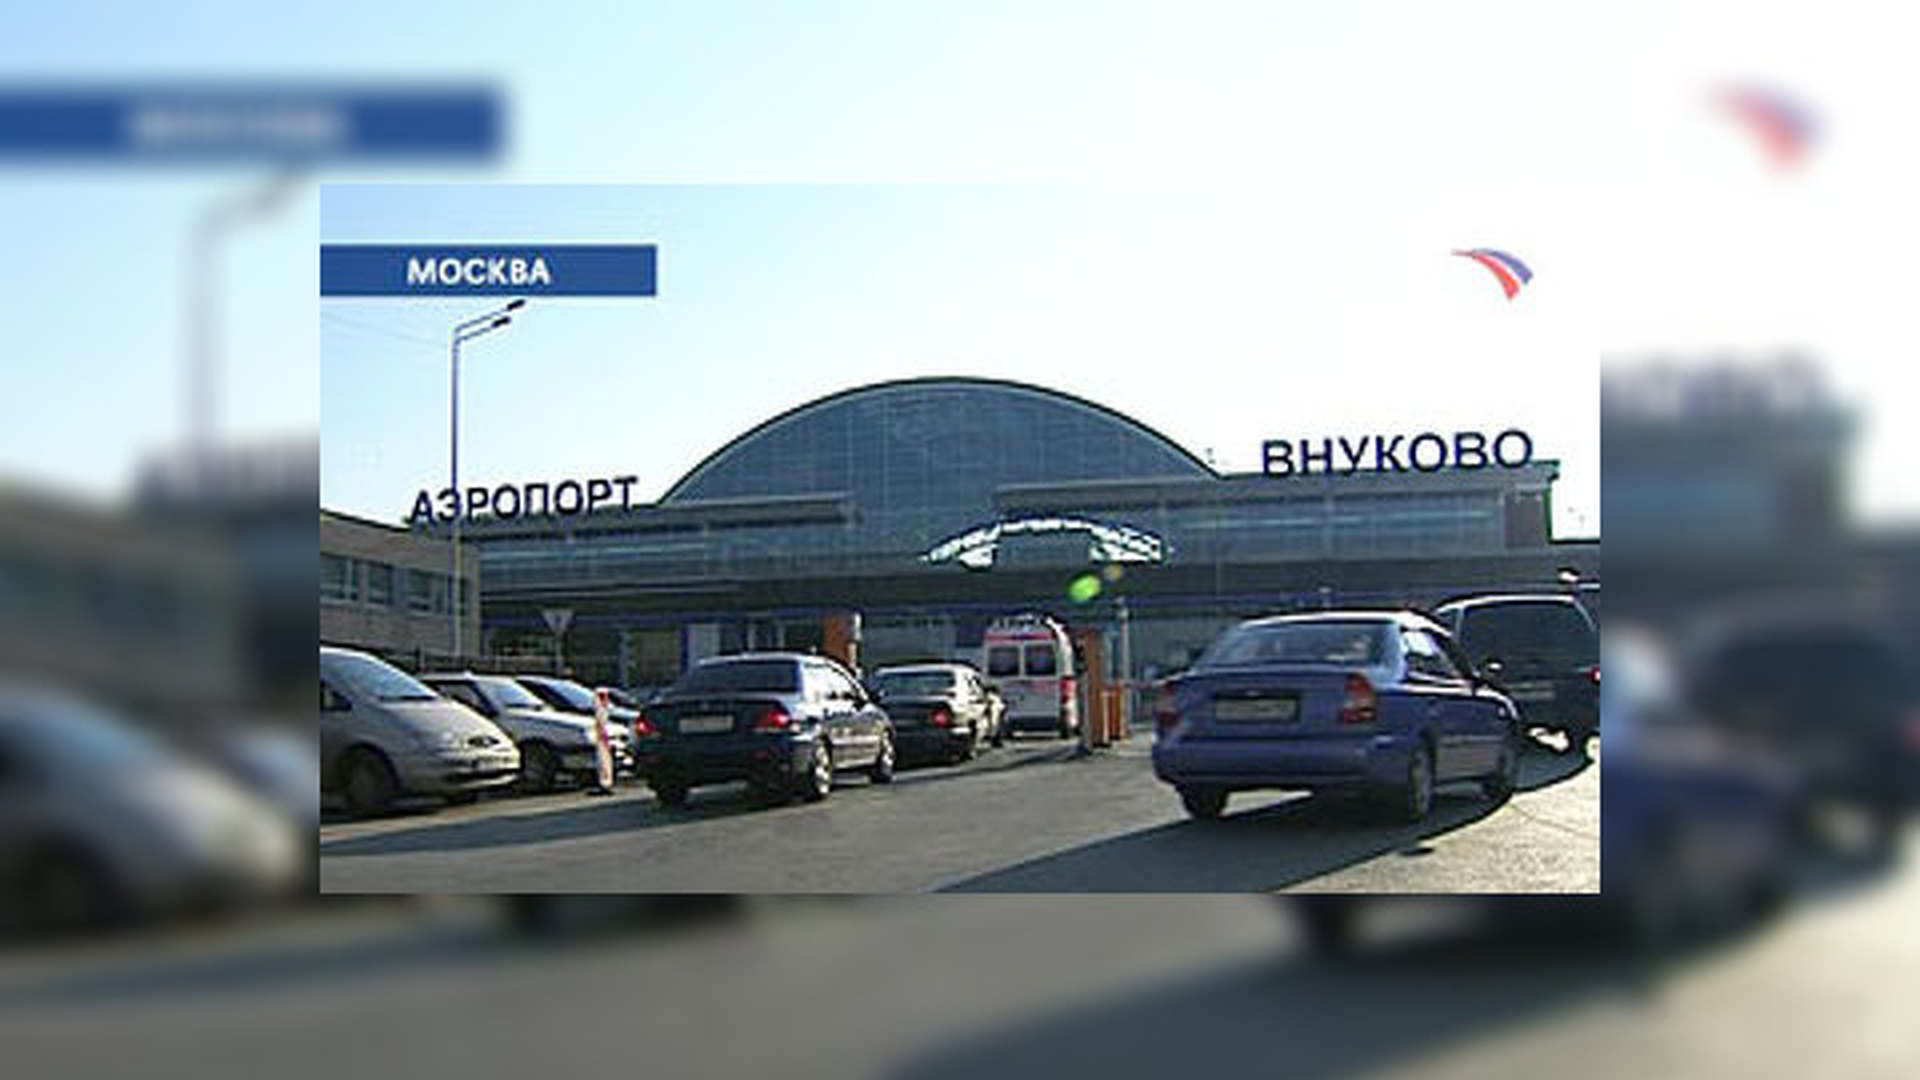 аэропорт внуково и его терминалы